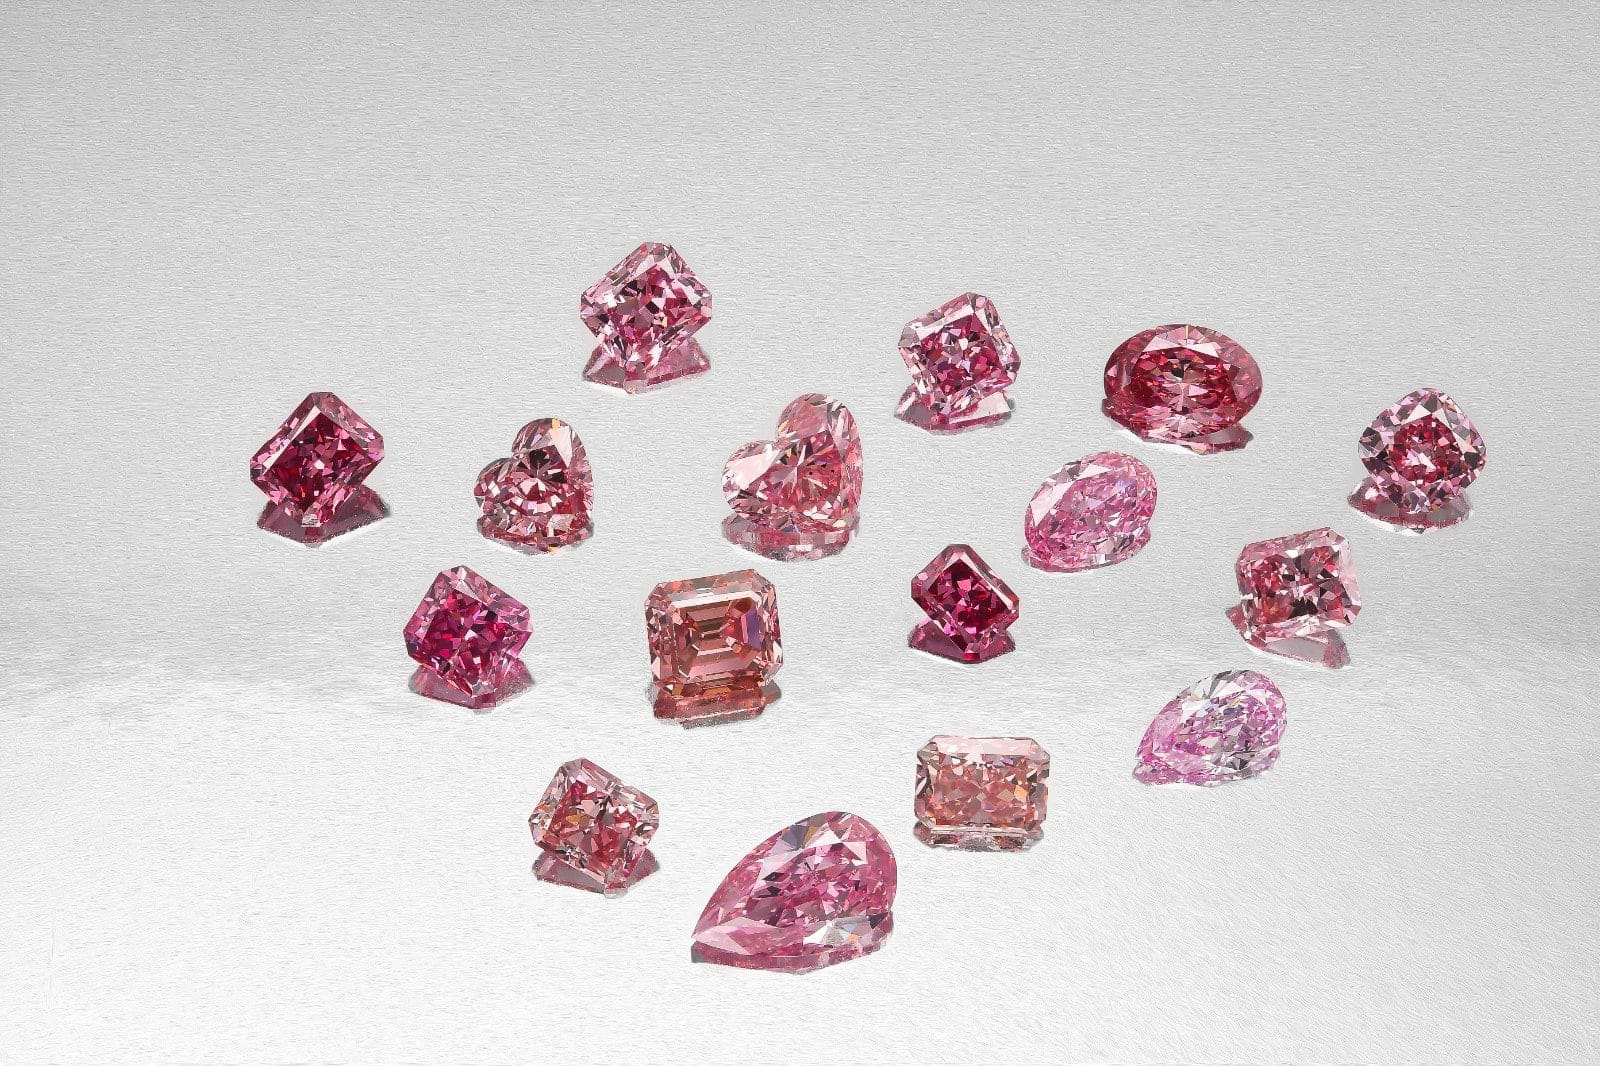 The 16 stones won by LEIBISH at the 2020 Argyle Diamond Tender